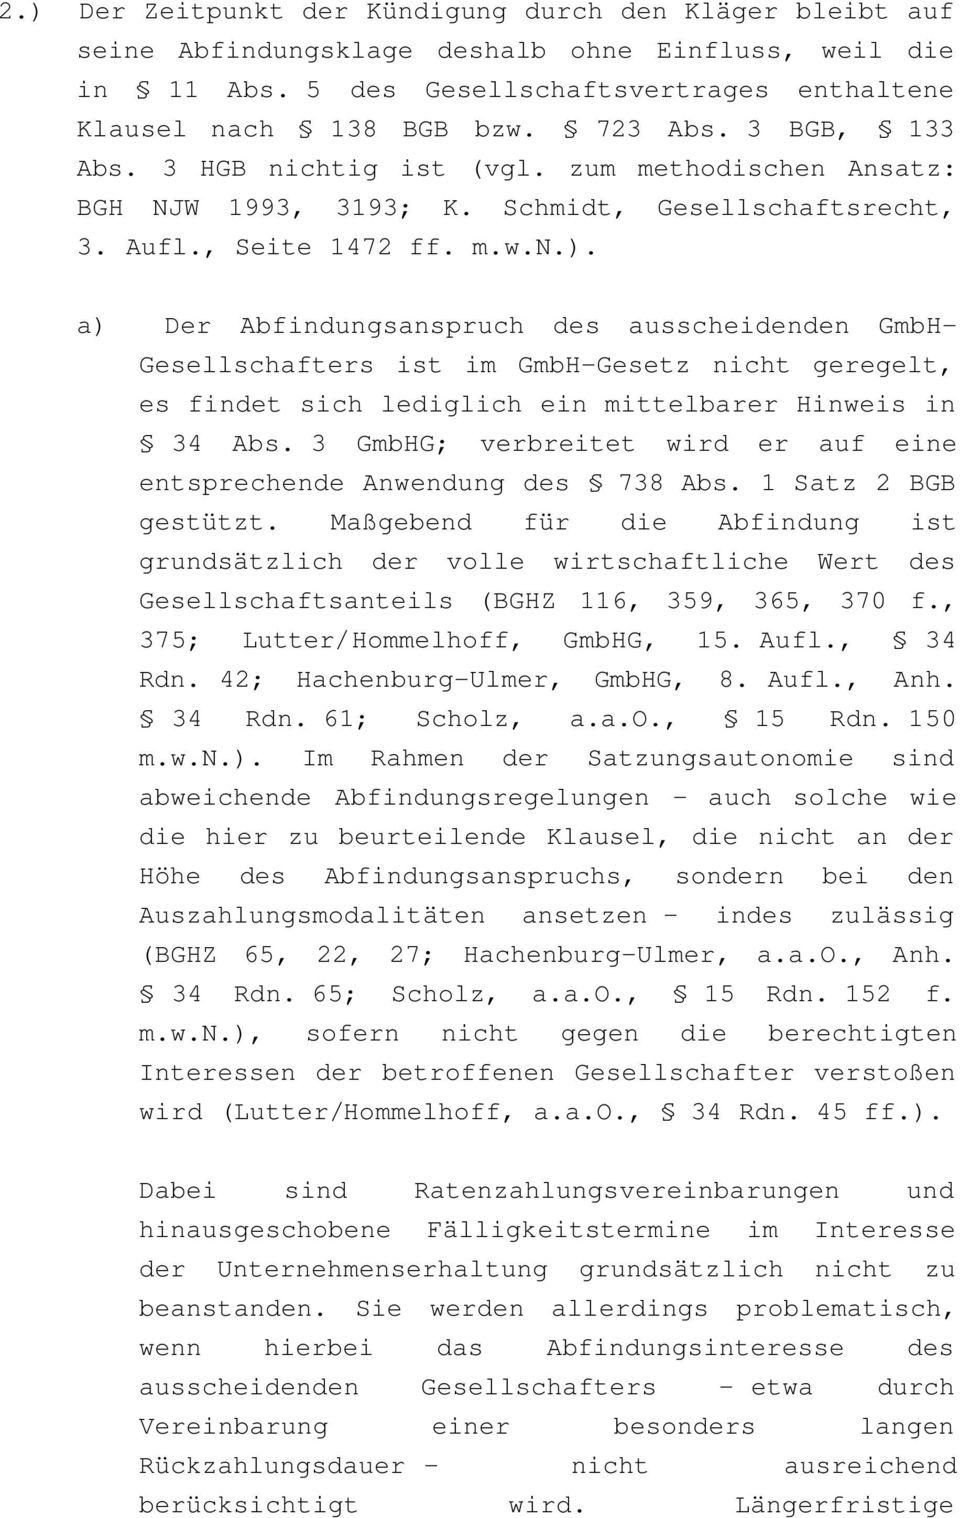 a) Der Abfindungsanspruch des ausscheidenden GmbH- Gesellschafters ist im GmbH-Gesetz nicht geregelt, es findet sich lediglich ein mittelbarer Hinweis in 34 Abs.